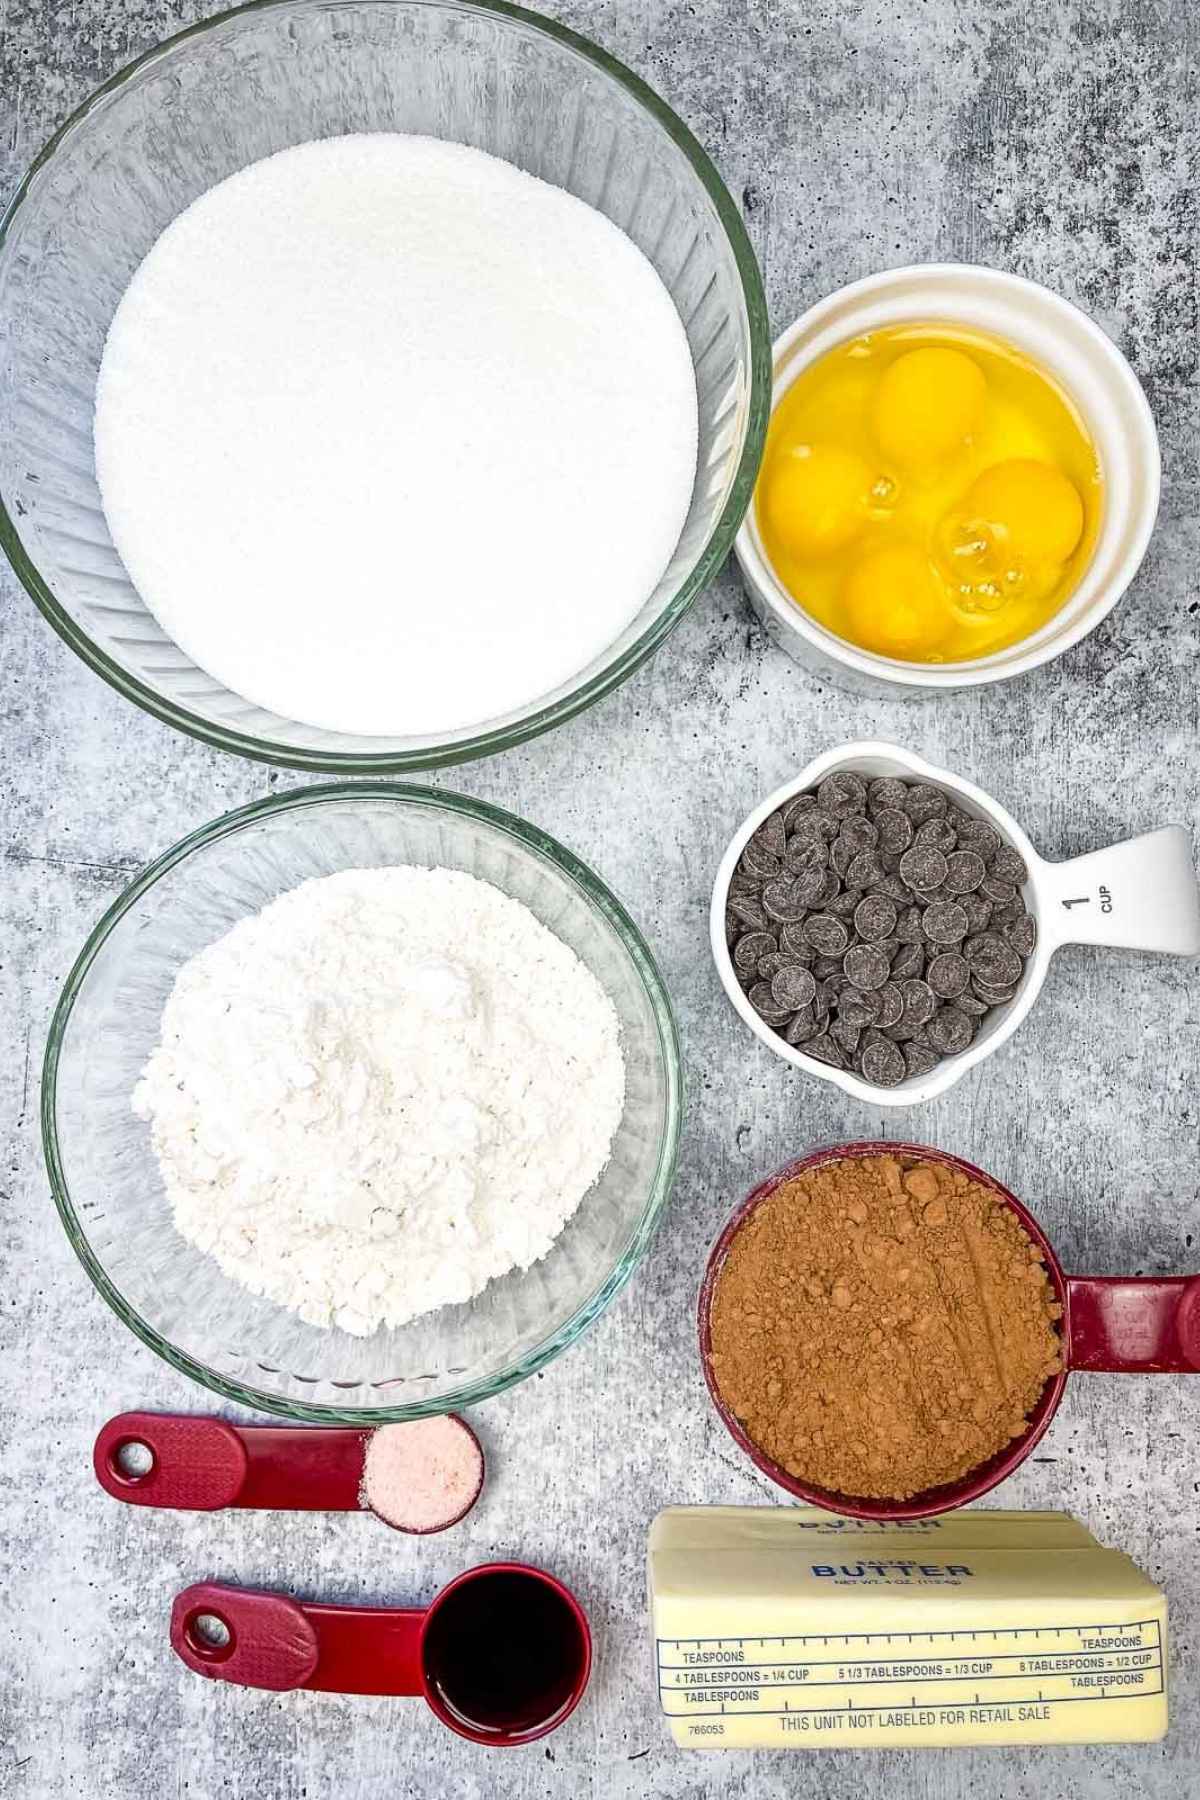 Ingredients for chocolate fudge brownies.